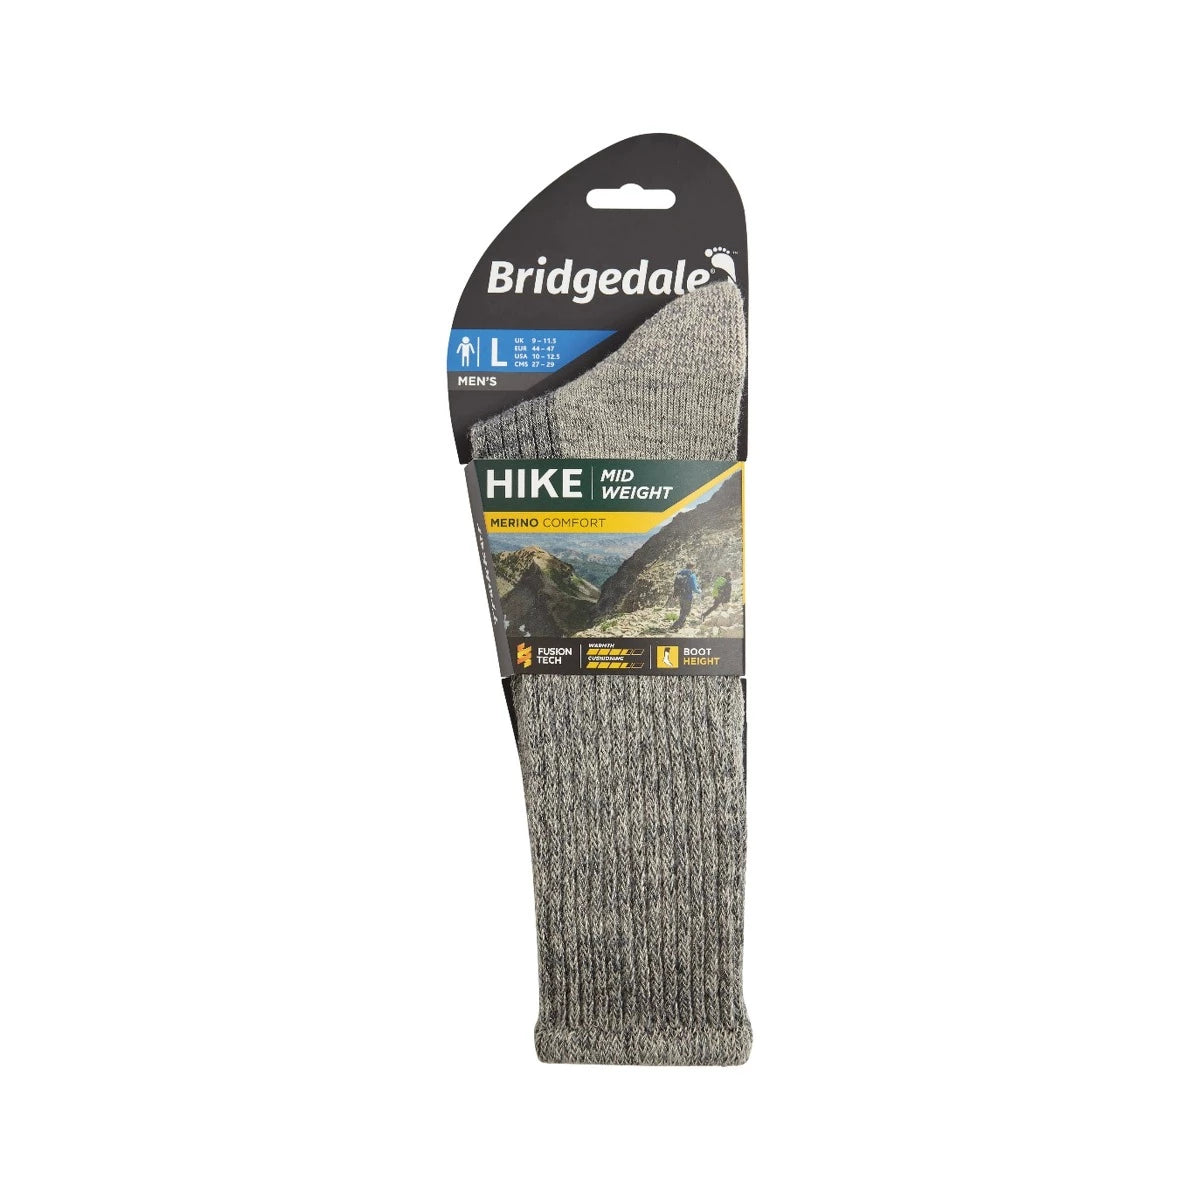 Mid-Weight Merino comfort socks by Bridgedale in Grey 